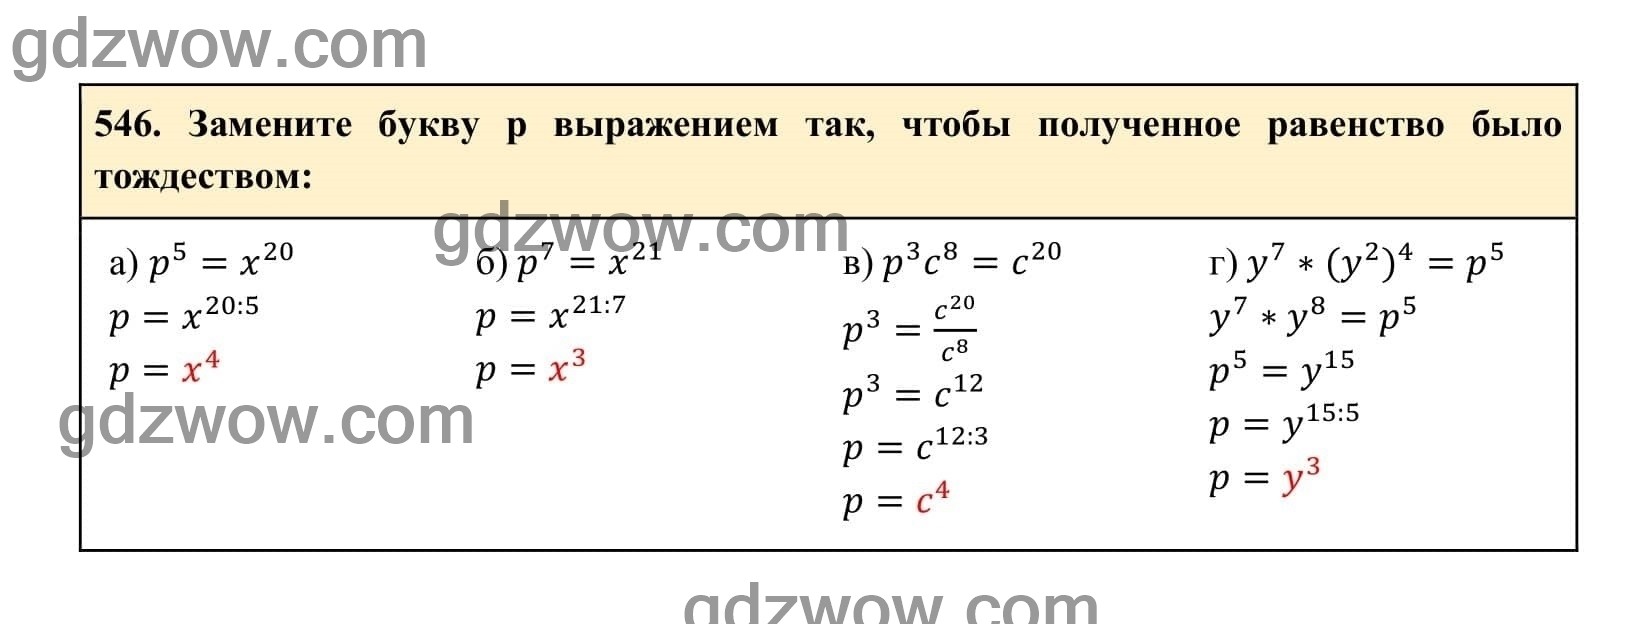 Упражнение 546 - ГДЗ по Алгебре 7 класс Учебник Макарычев (решебник) - GDZwow